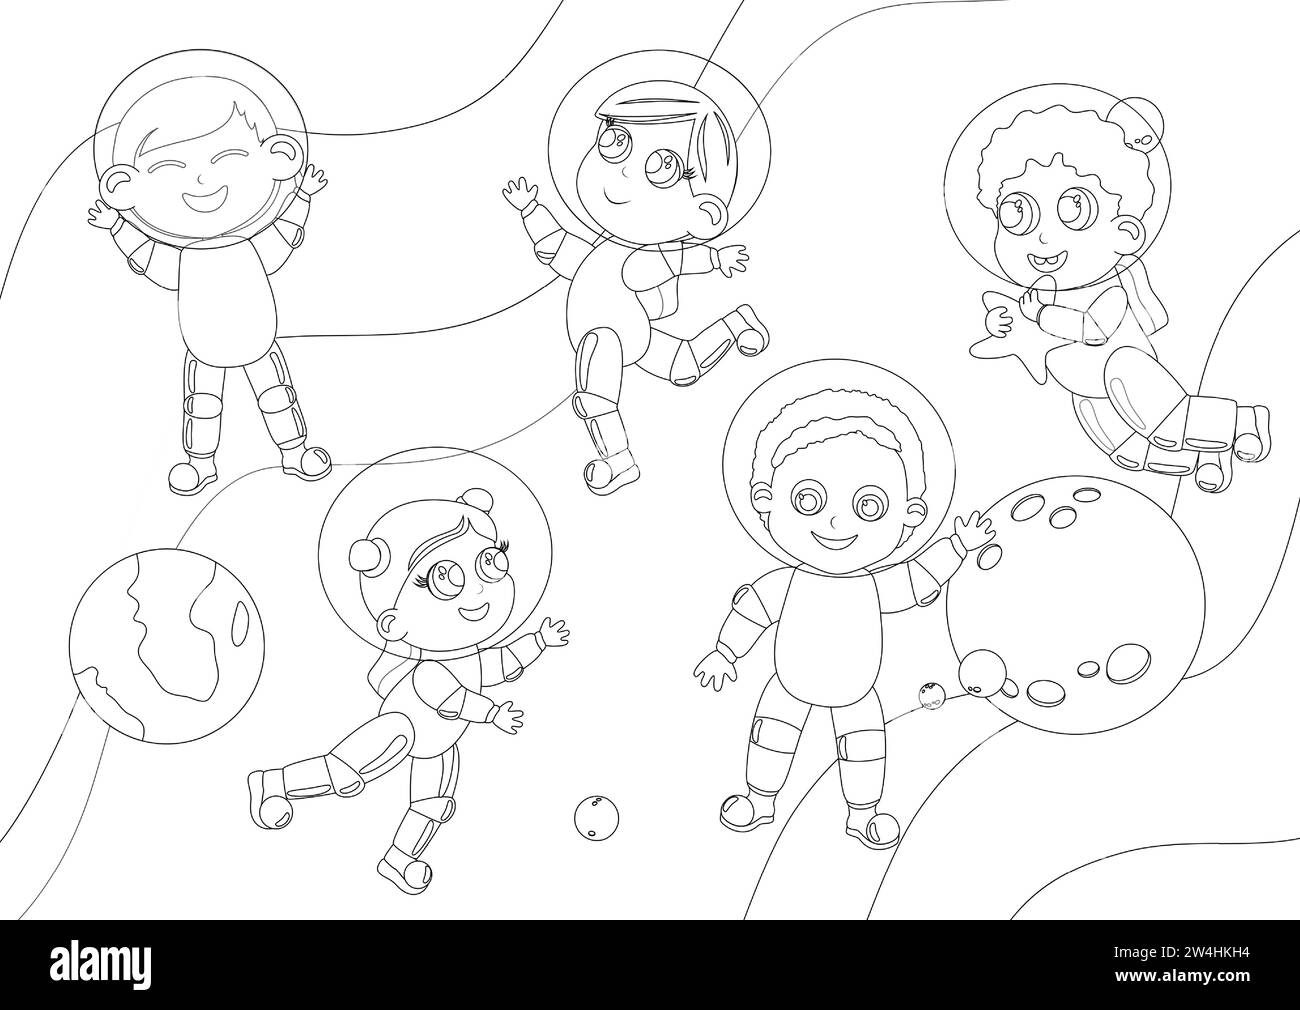 Coloriage. Les enfants d'une fille et d'un garçon en costumes d'astronaute sont dans l'espace. Ils s'amusent dans le contexte de la planète Terre et d'autres pla Illustration de Vecteur